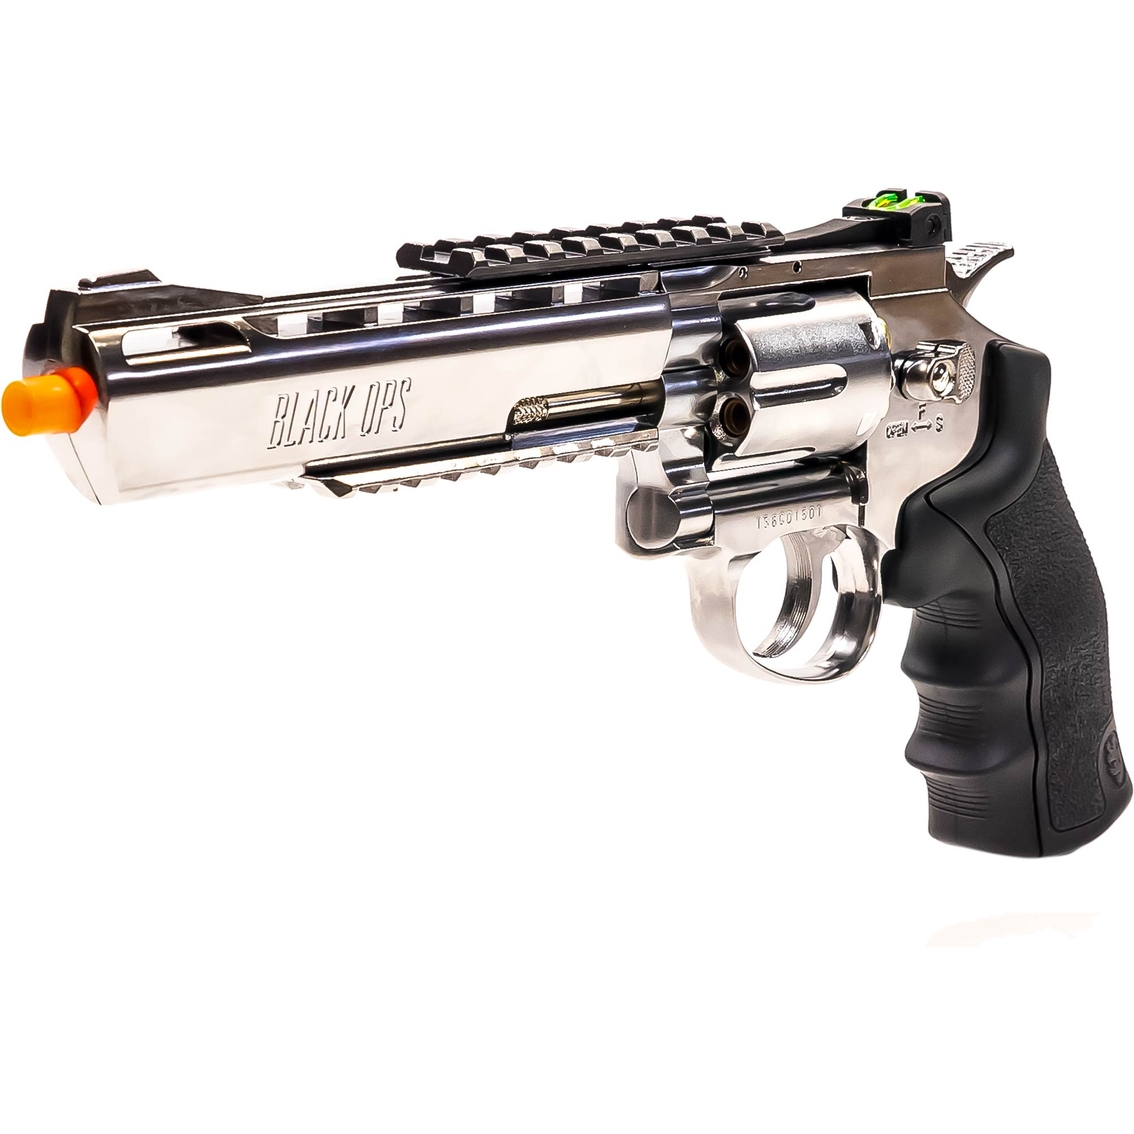 Black Ops/WinGun Airsoft Revolver Shells, 6mm, 6ct